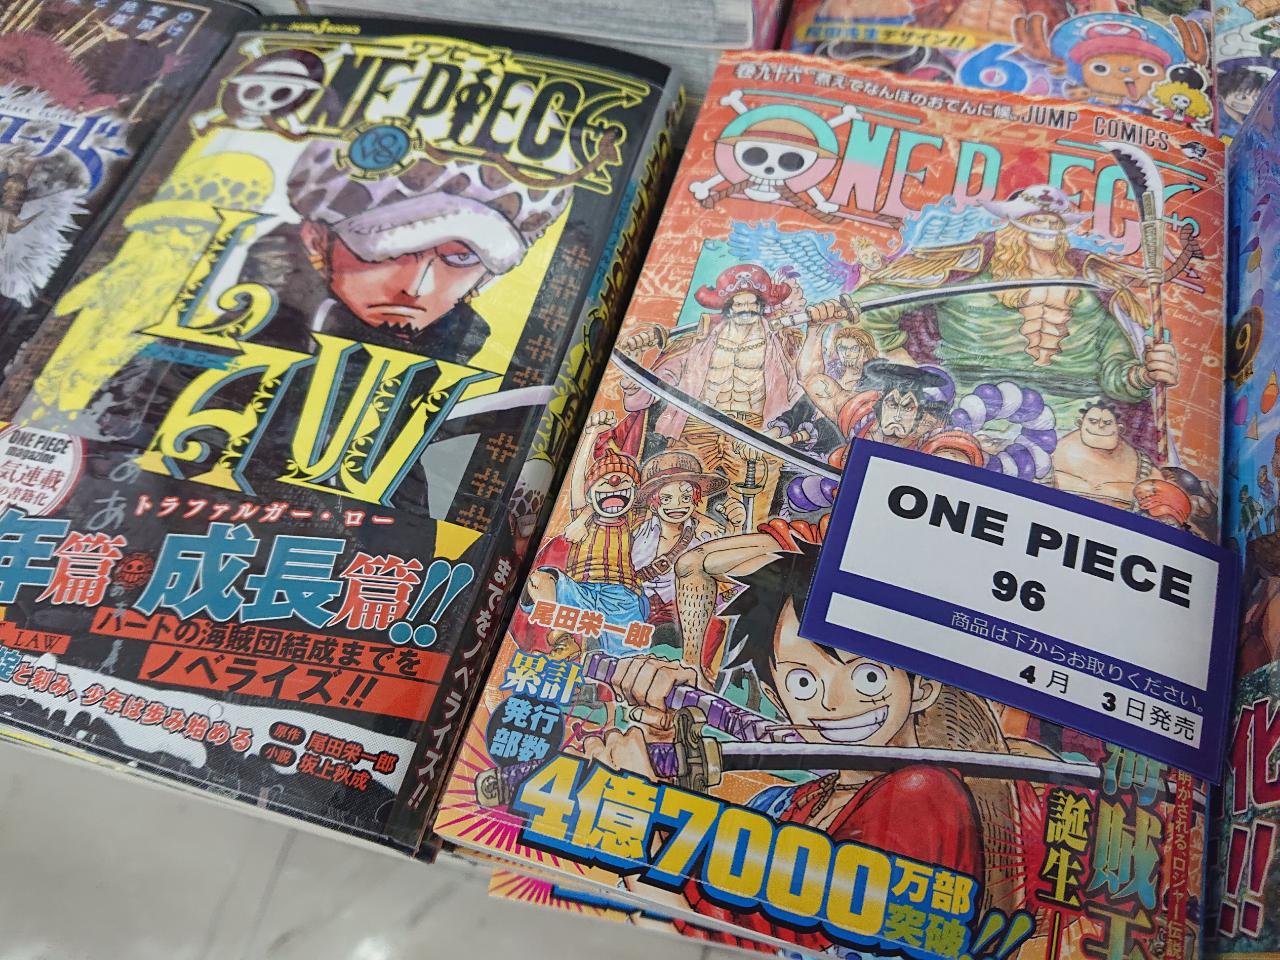 大盛堂書店 B1入荷情報 本日ジャンプコミック発売日です 本日は大人気コミック One Piece 96巻 同時発売でローが主人公の小説 Novel Law も発売しております さらに ブラッククローバー 24巻には特典がついてきております ほかにも多数本日発売